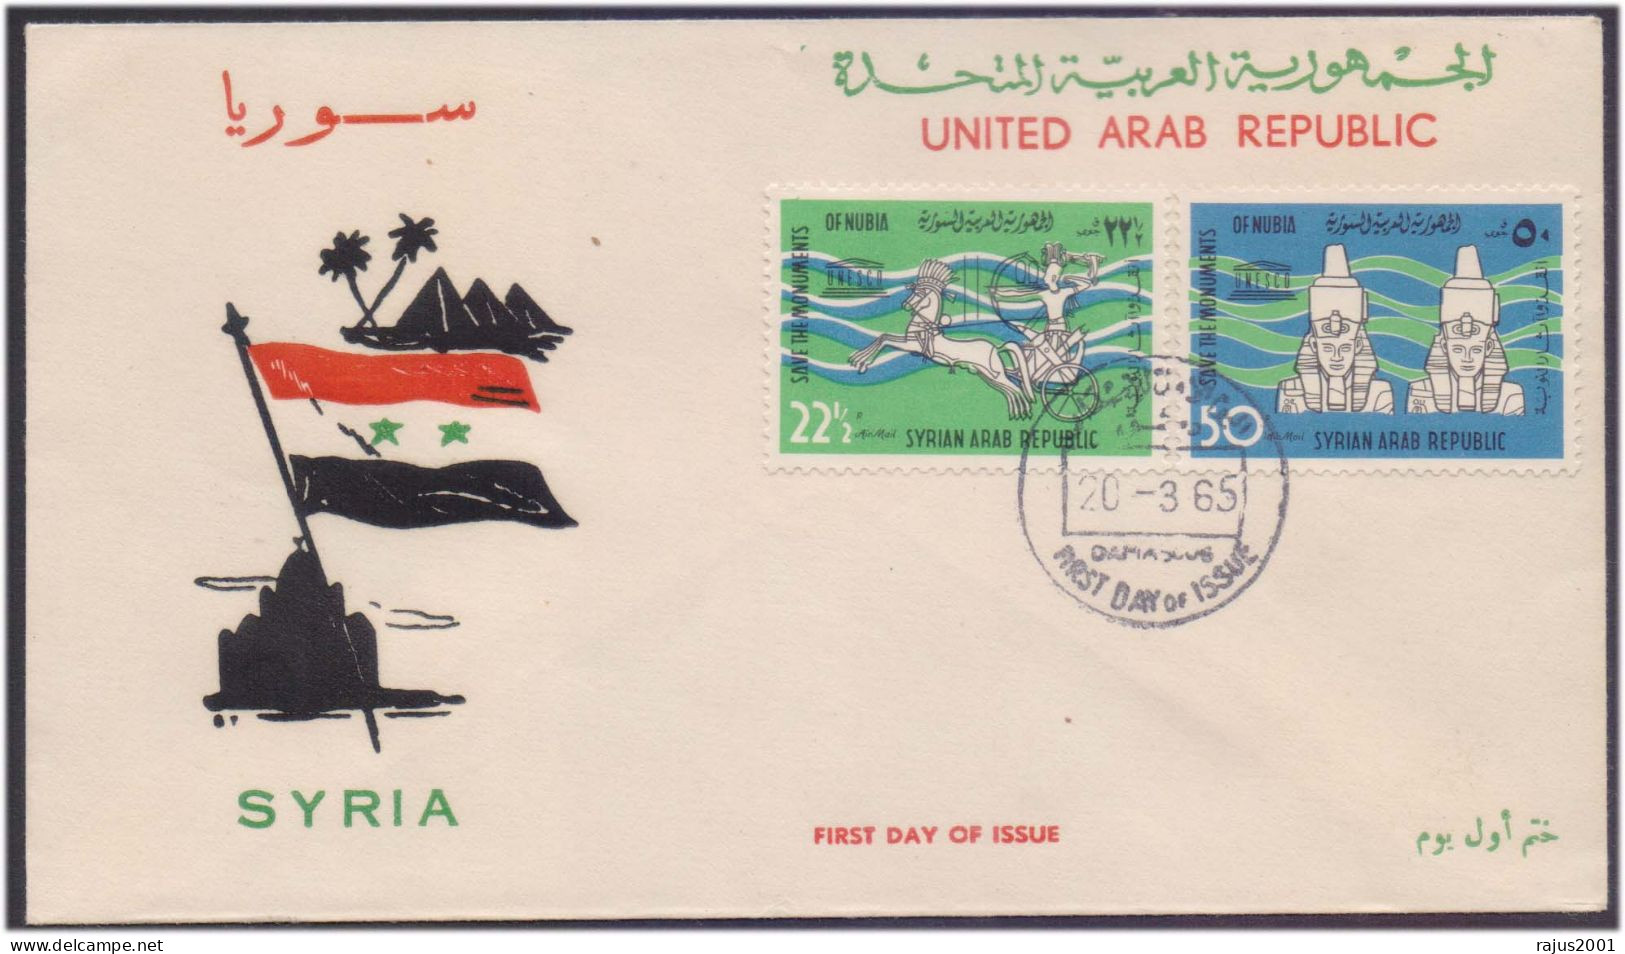 Save Monuments Of Nubia, Abu Simbel Temple, Egyptology Pharaon, Pharaoh, Mythology, UNESCO, Syria FDC 1965 - Egittologia